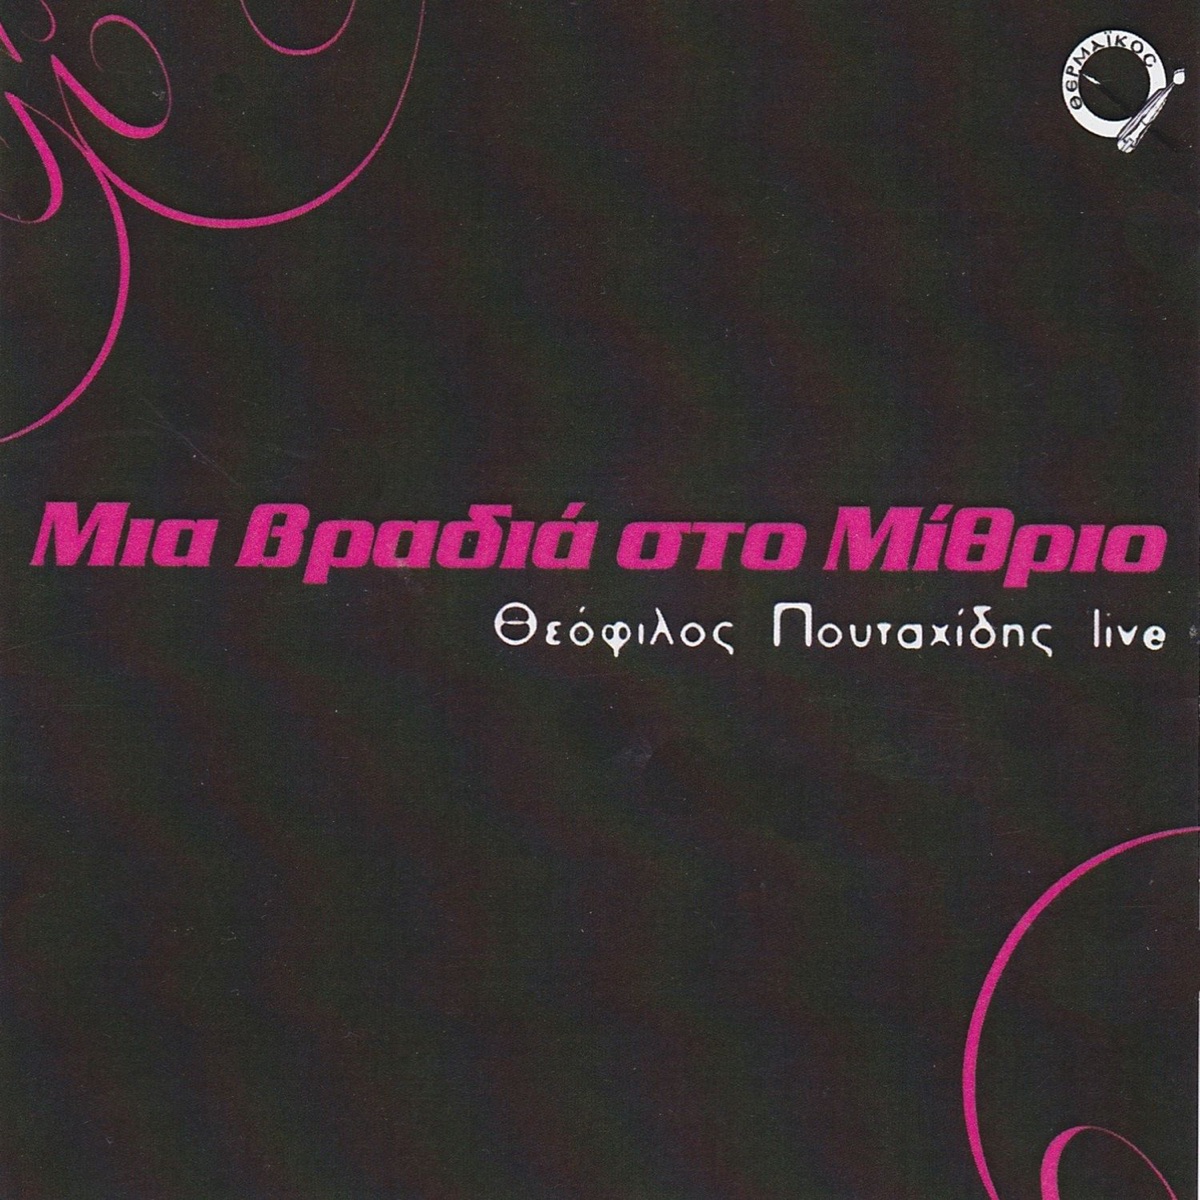 Pegadi stratan - Album by Theofilos Poutahidis - Apple Music